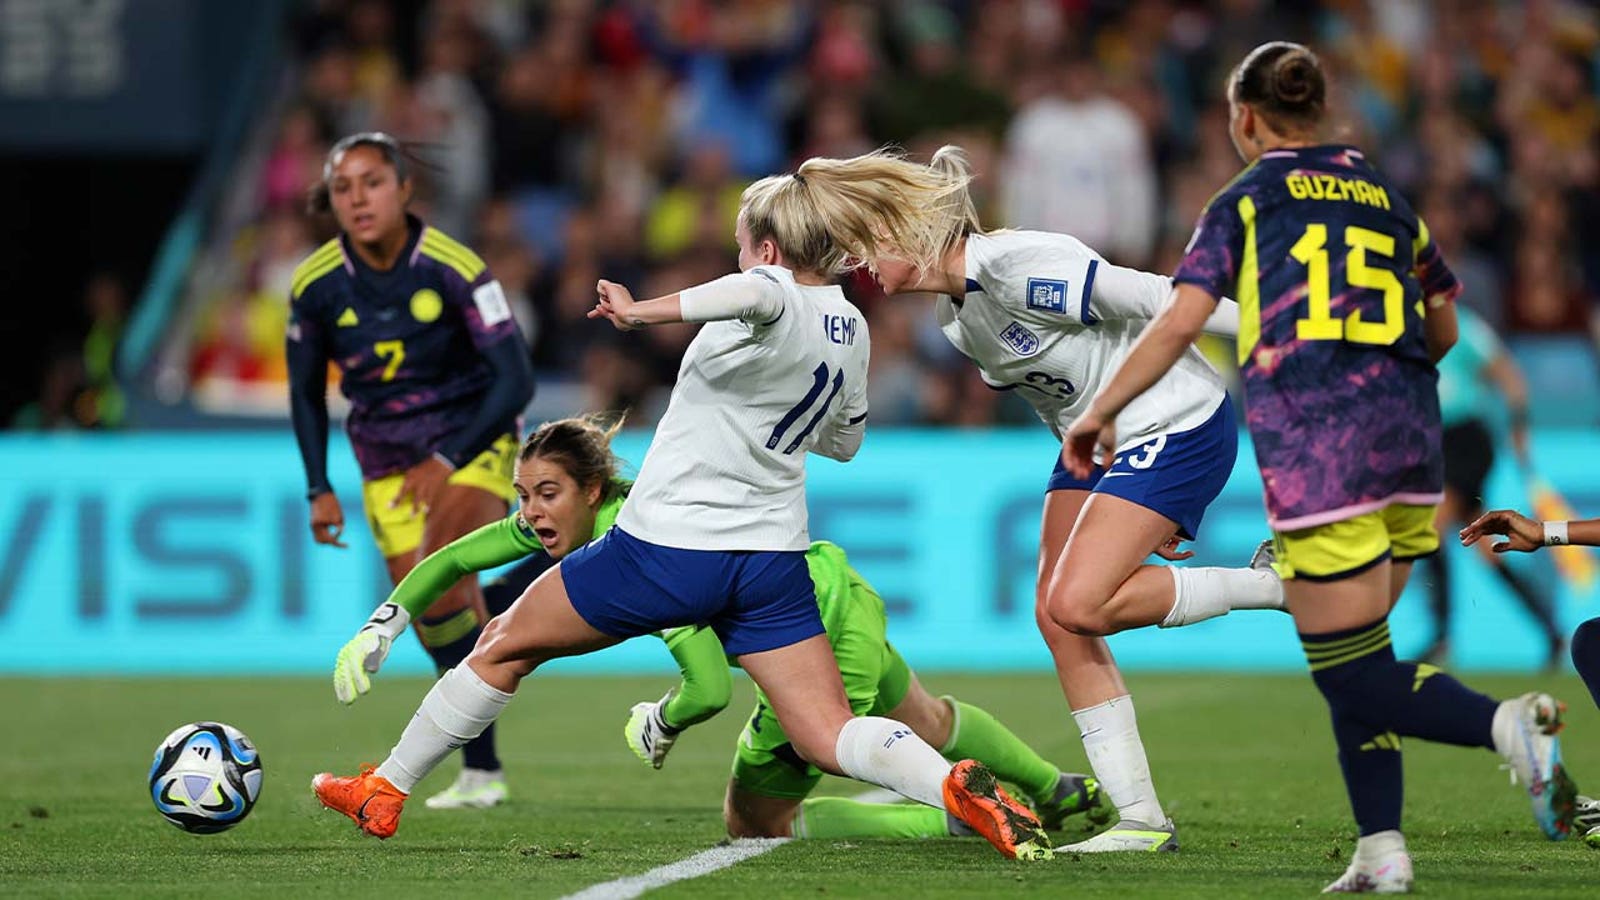 England's Lauren Hemp scores goal vs. Colombia in 45+7'